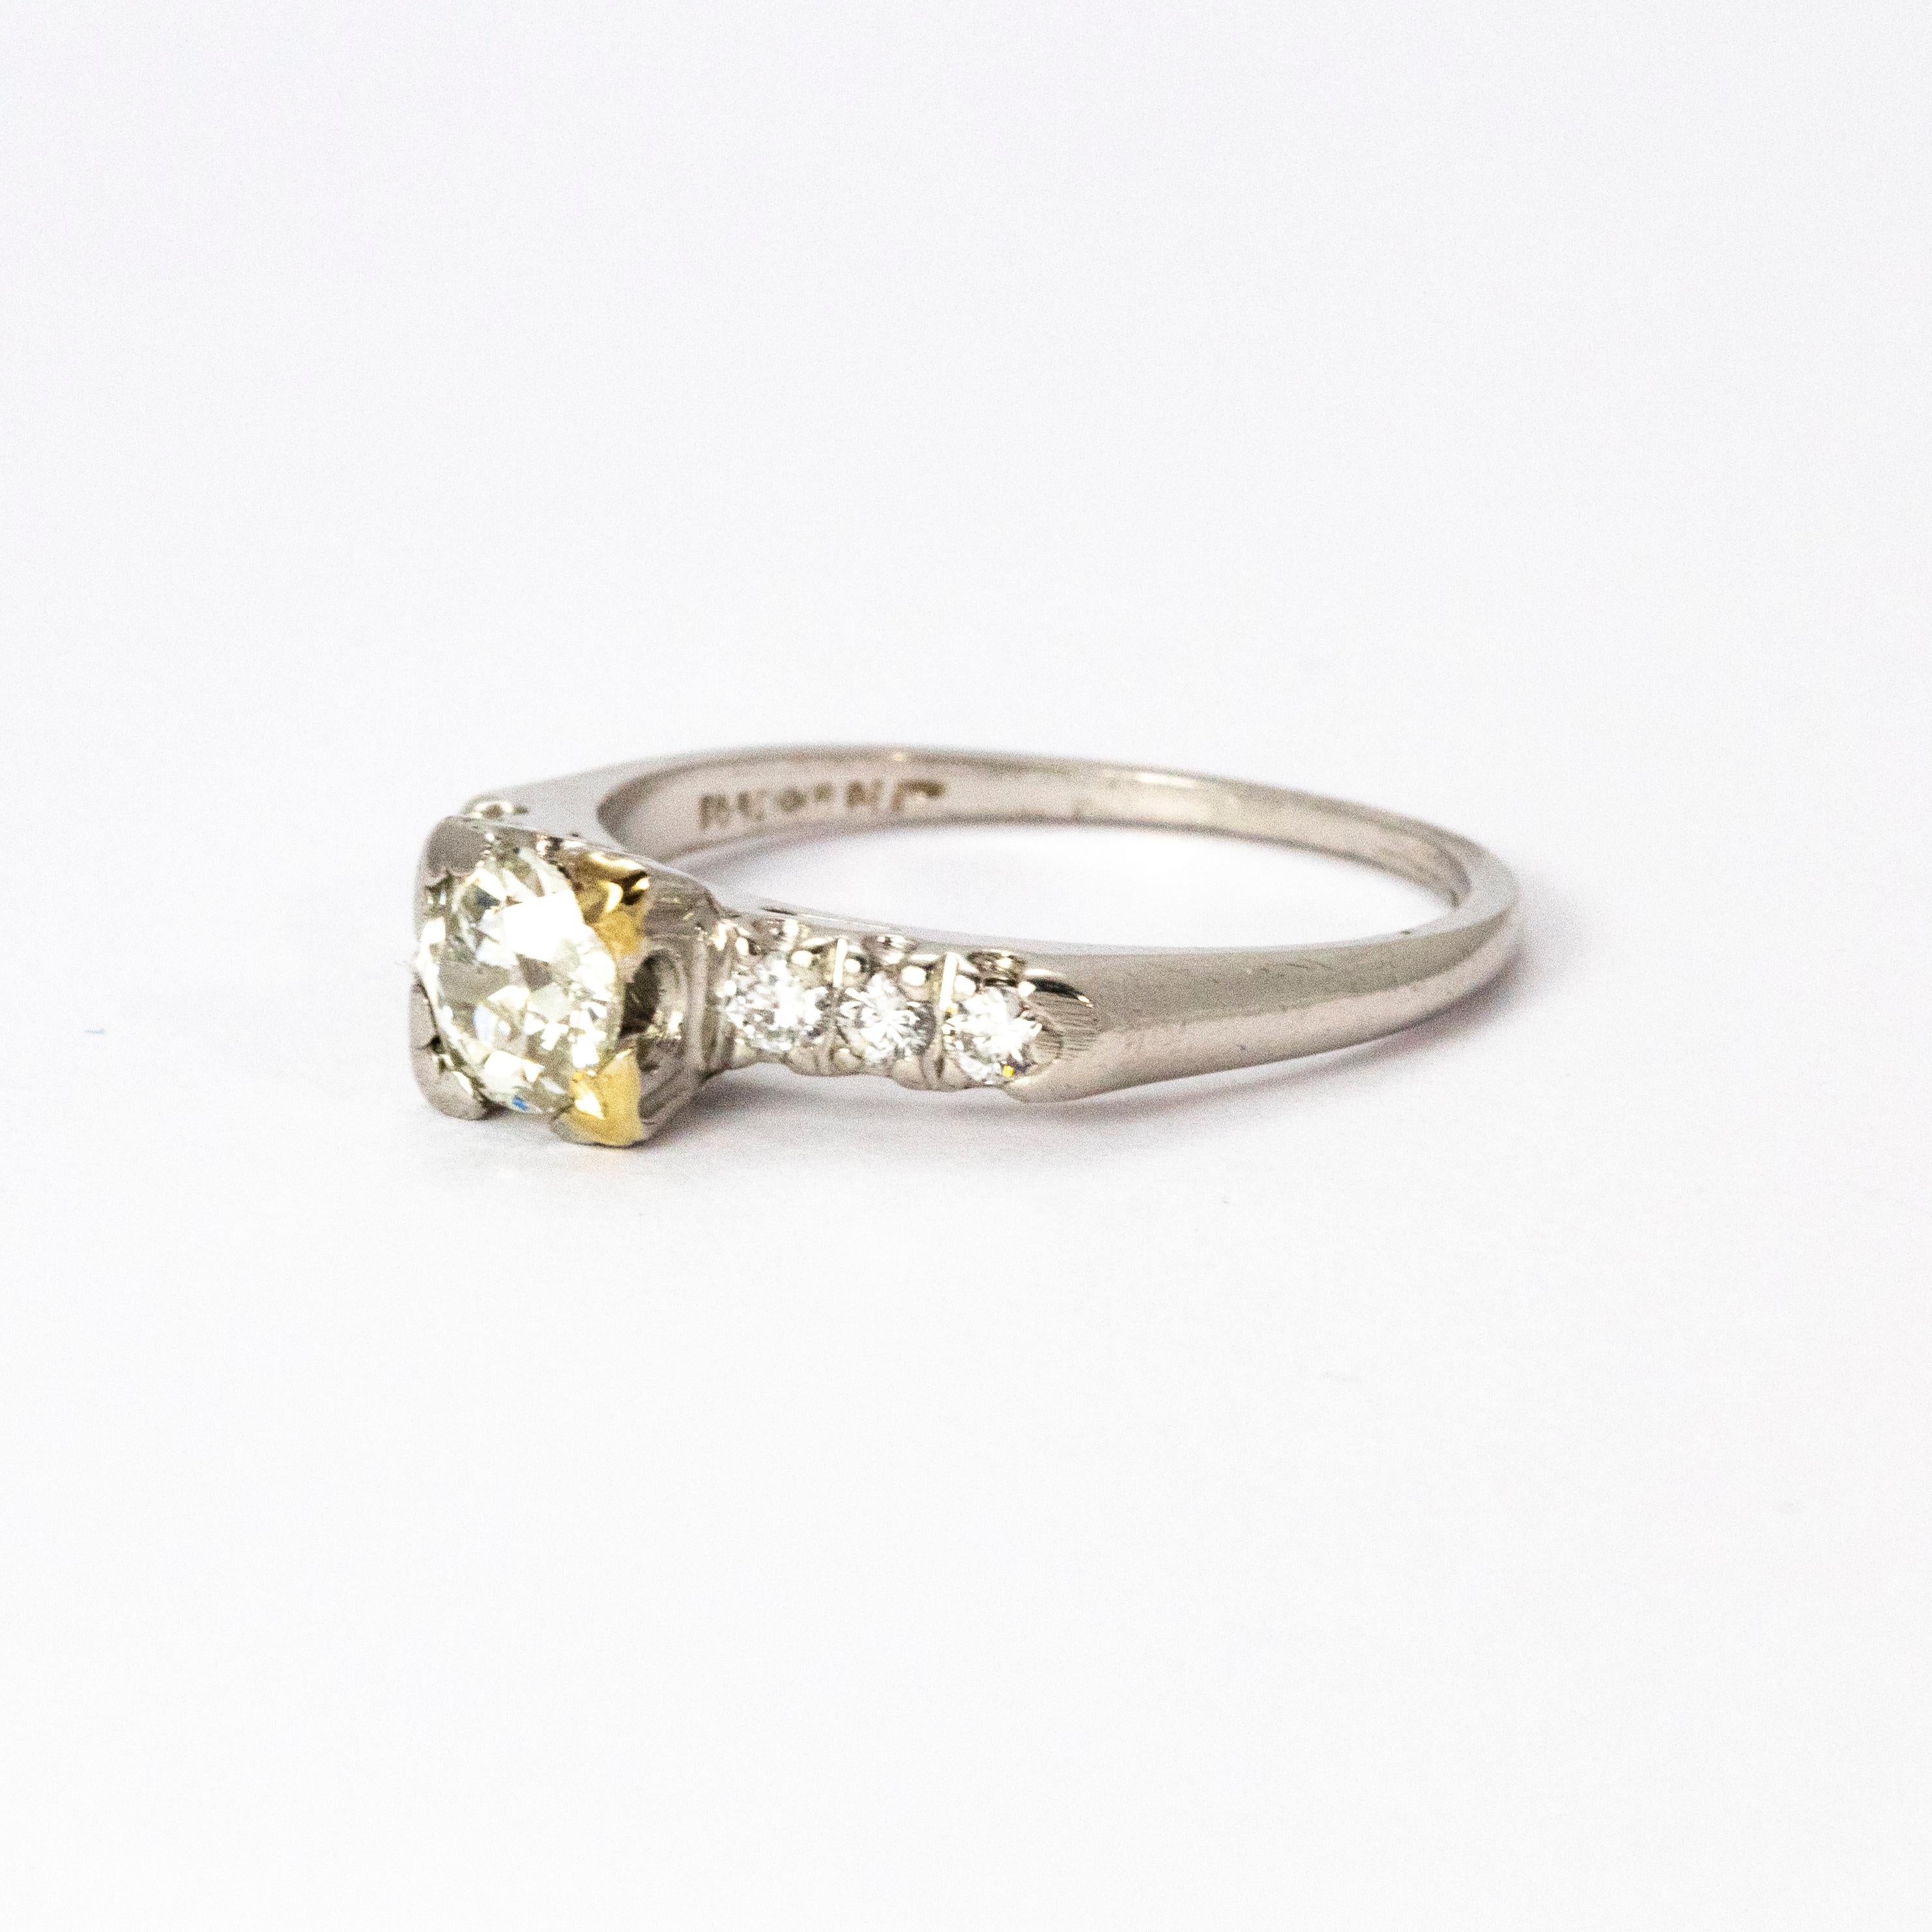 Ein atemberaubender Solitär-Diamantring im Vintage-Stil. Der schöne zentrale alte europäische Schliff Diamant misst 80 Punkte, H Farbe und VS2 Klarheit. Die Schultern sind jeweils mit einem Trio von Diamanten besetzt. Modelliert in